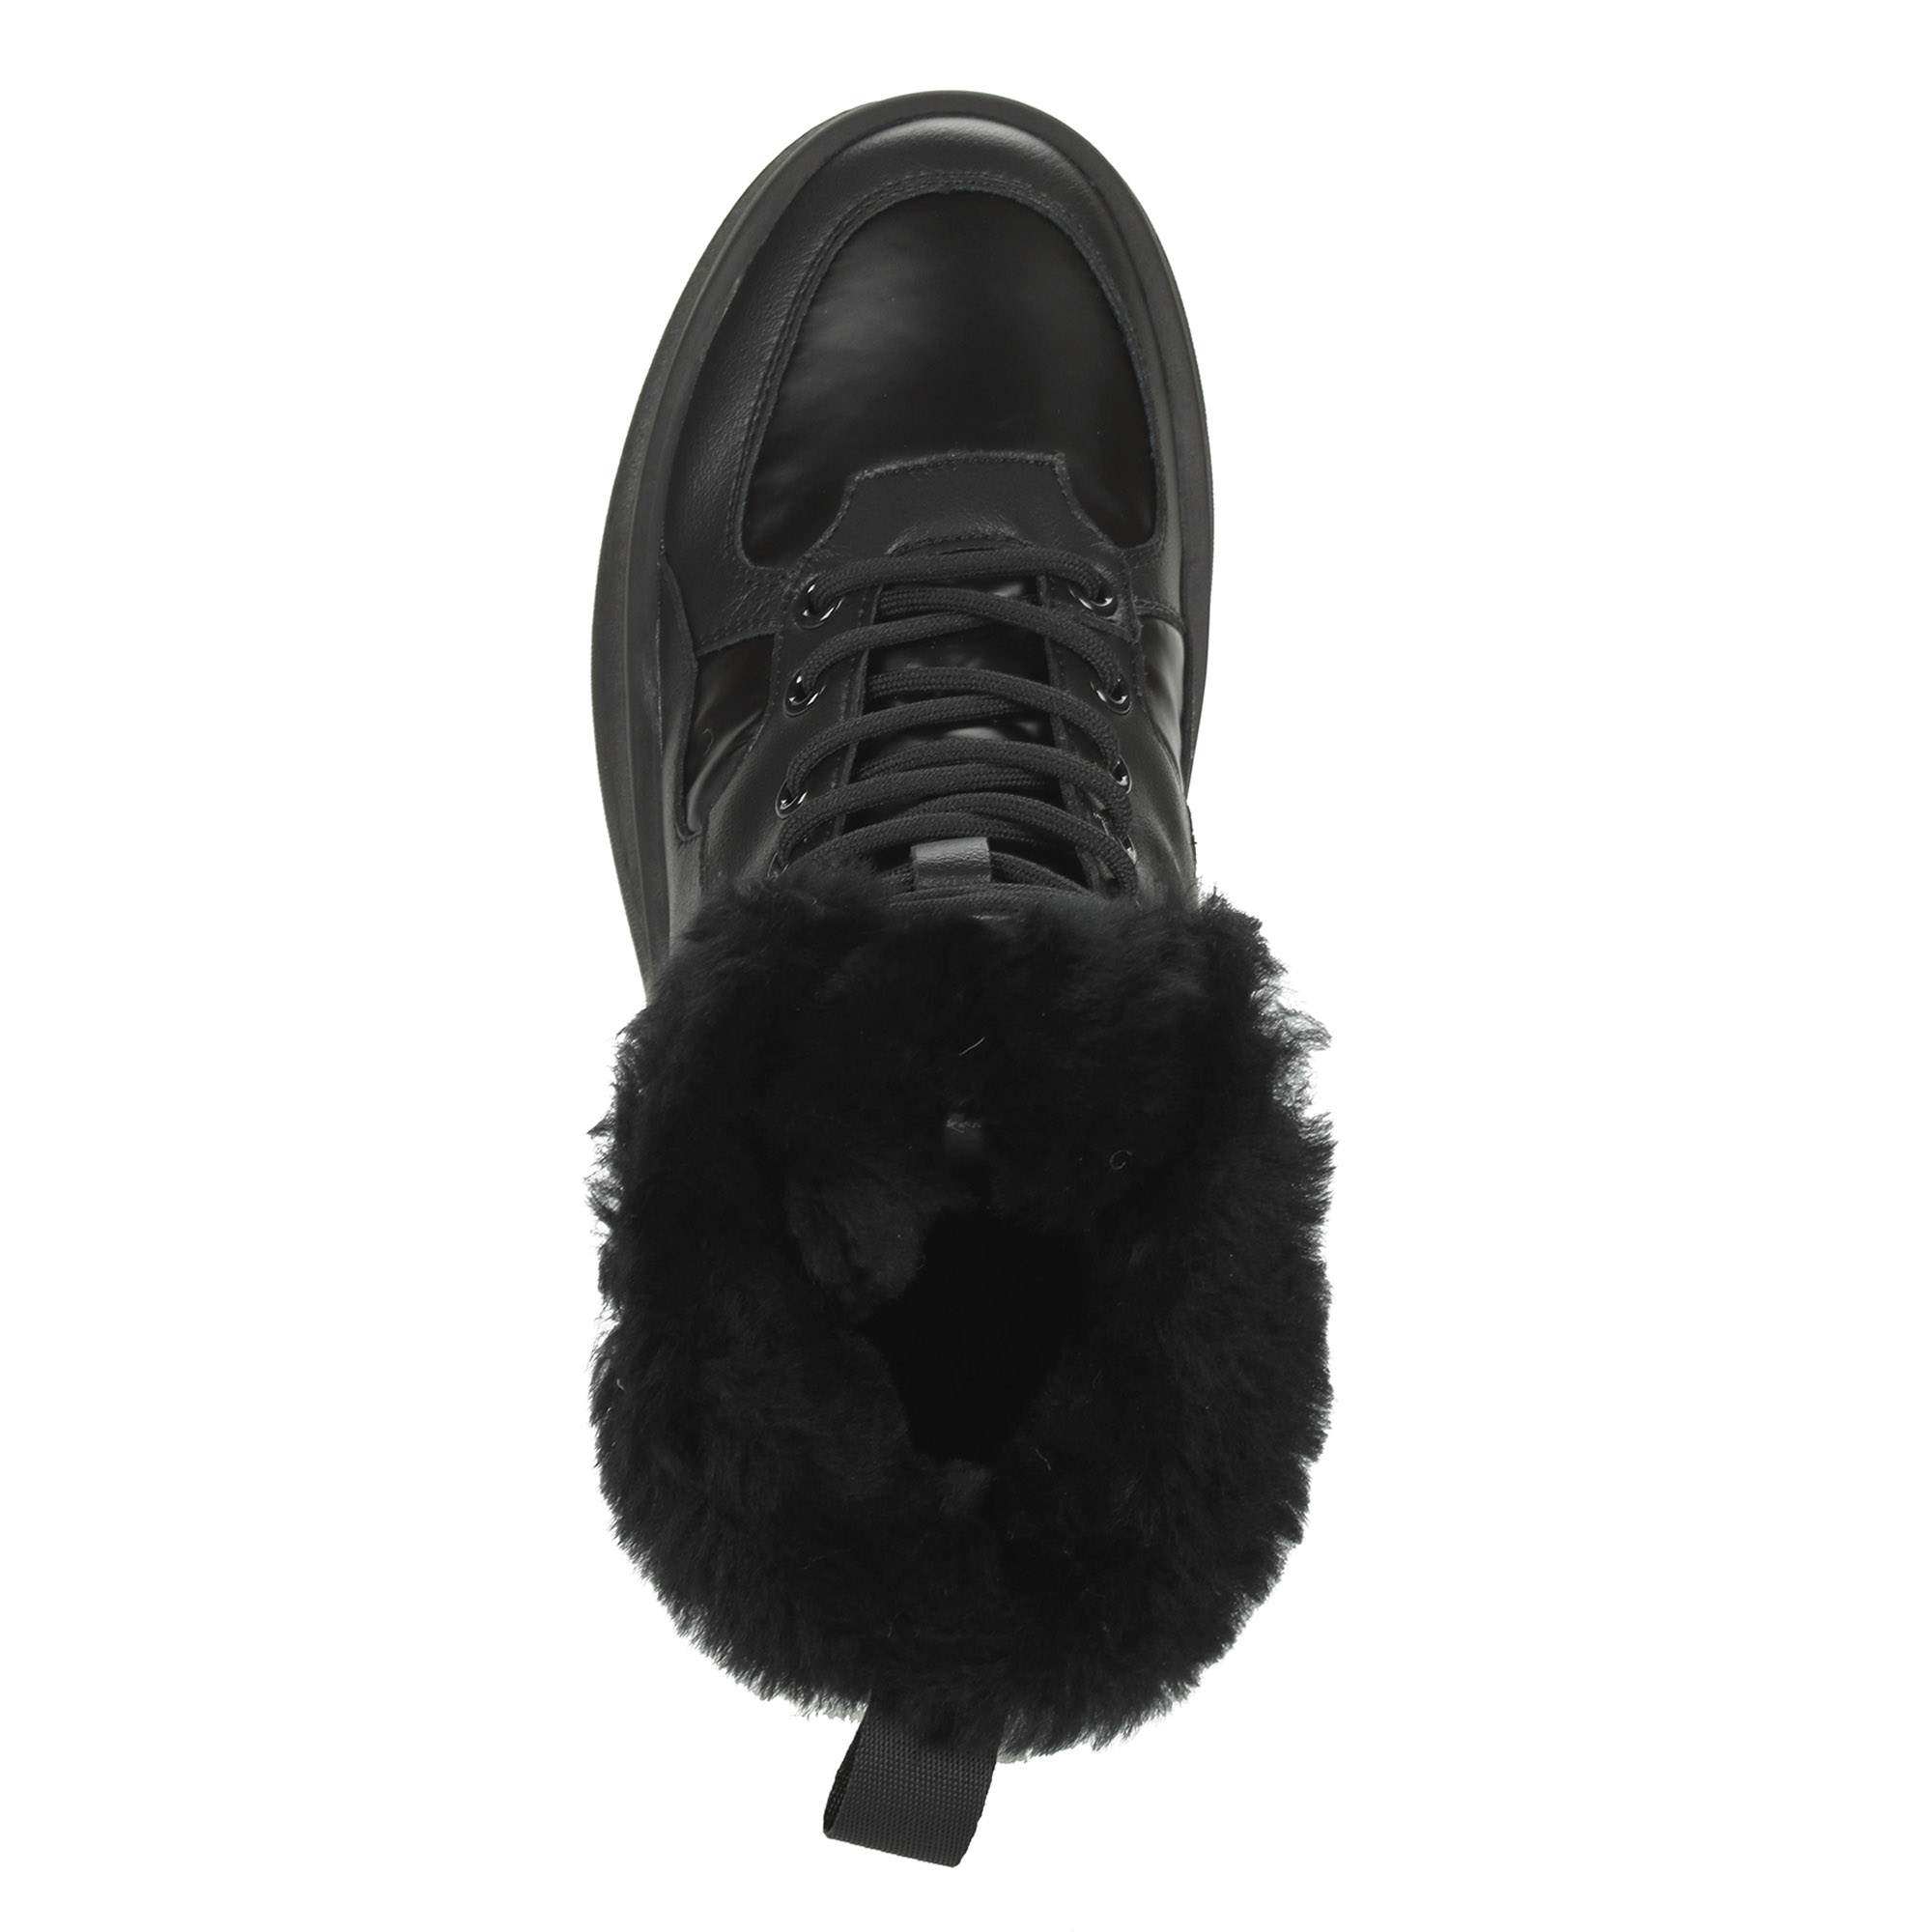 Черные высокие кроссовки из комбинированных материалов смеховой опушкой на подкладке из натуральной шерсти на утолщенной платформе Respect, размер 37, цвет черный - фото 7